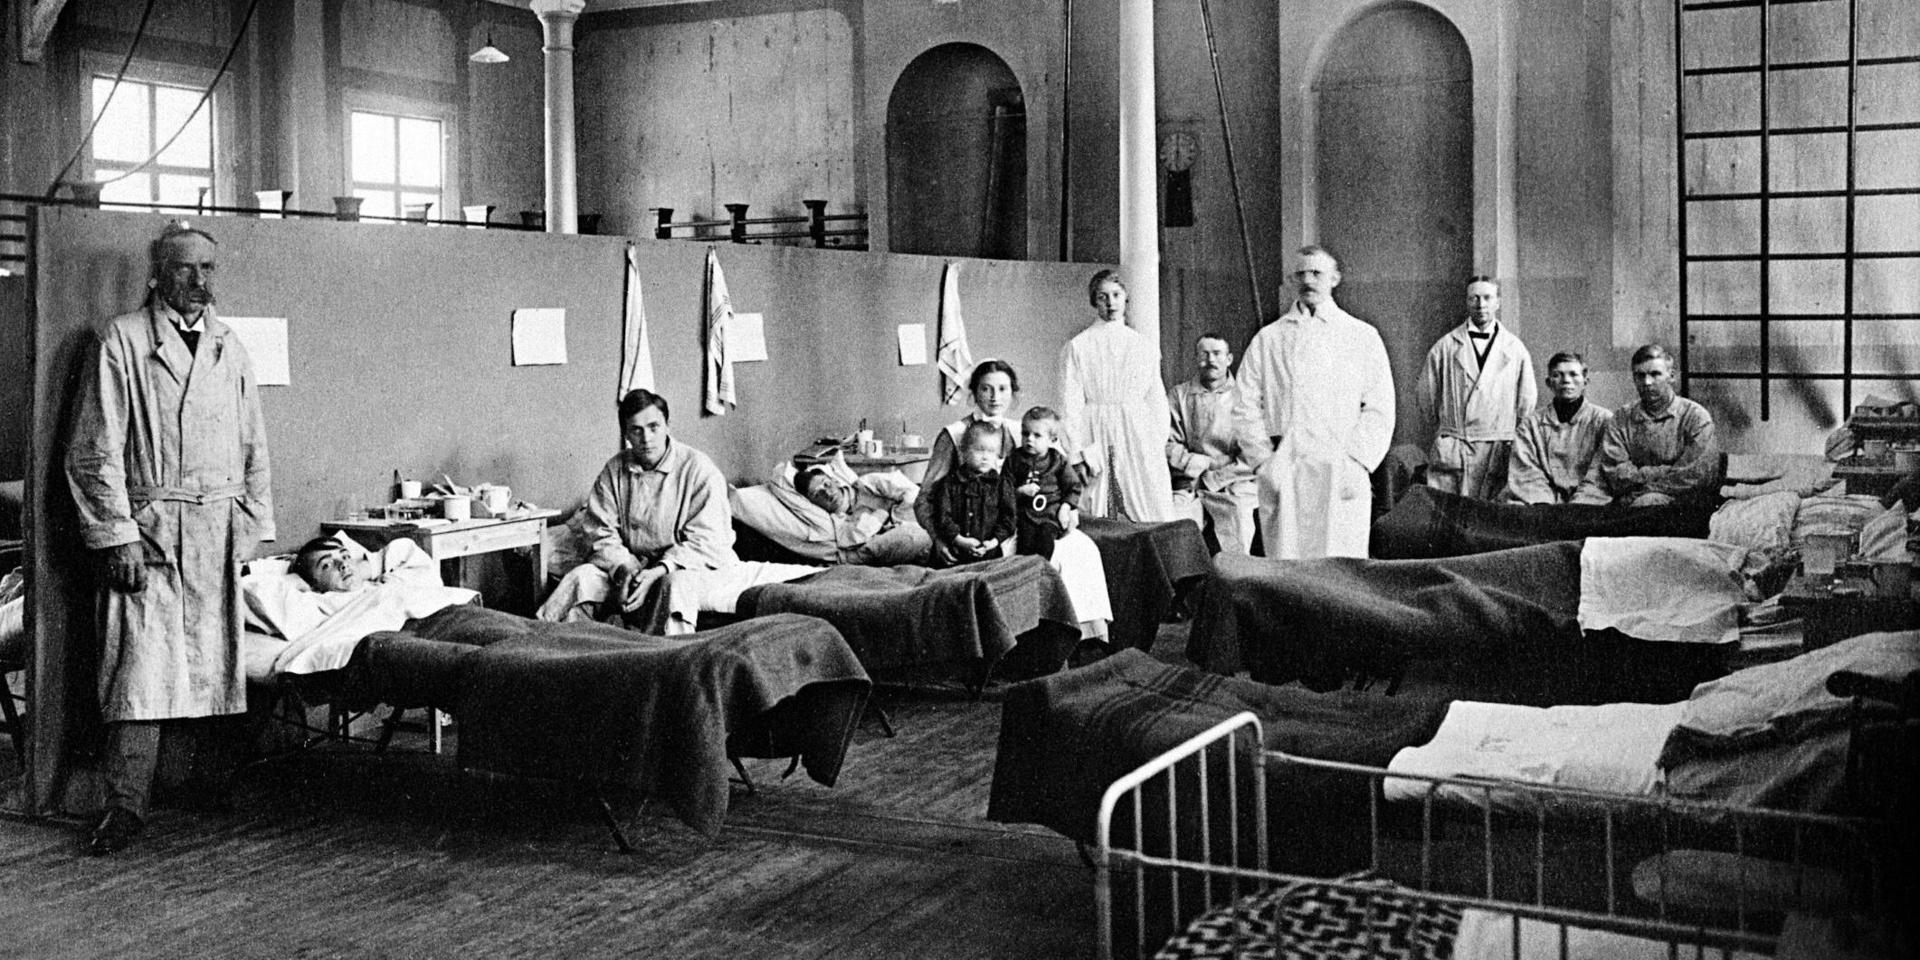 Vi kan lära av vår historia, skriver insändarskribenten. Bilden är från det provisoriska ”Spanska sjukhuset” i Östersund 1918.